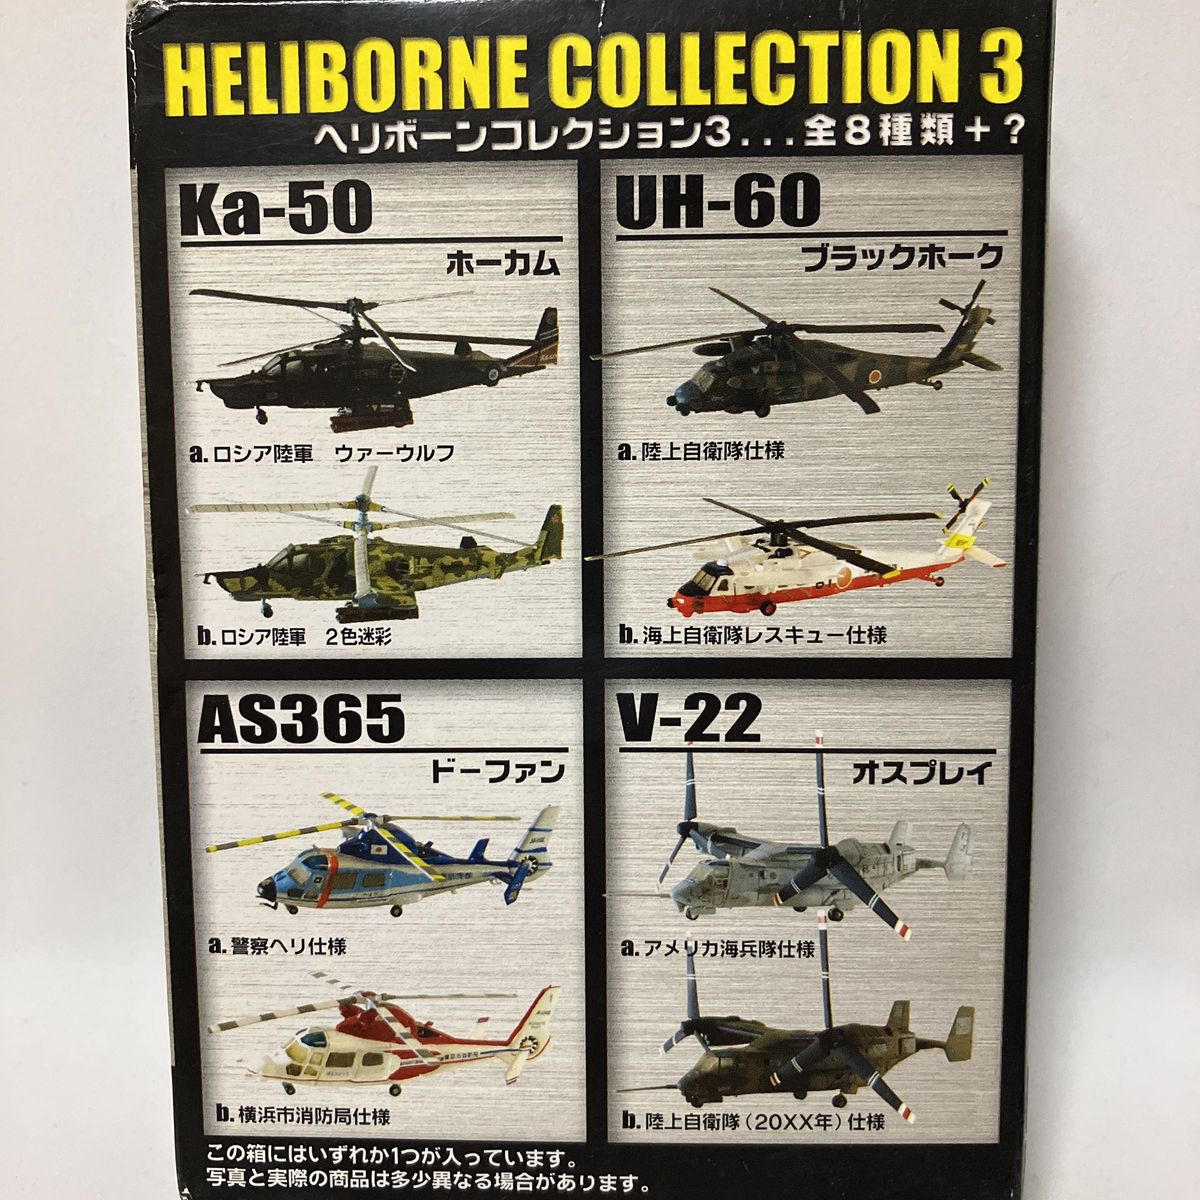 1/144 UH-60 ブラックホーク #A 陸上自衛隊仕様 ヘリボーンコレクション3 エフトイズ